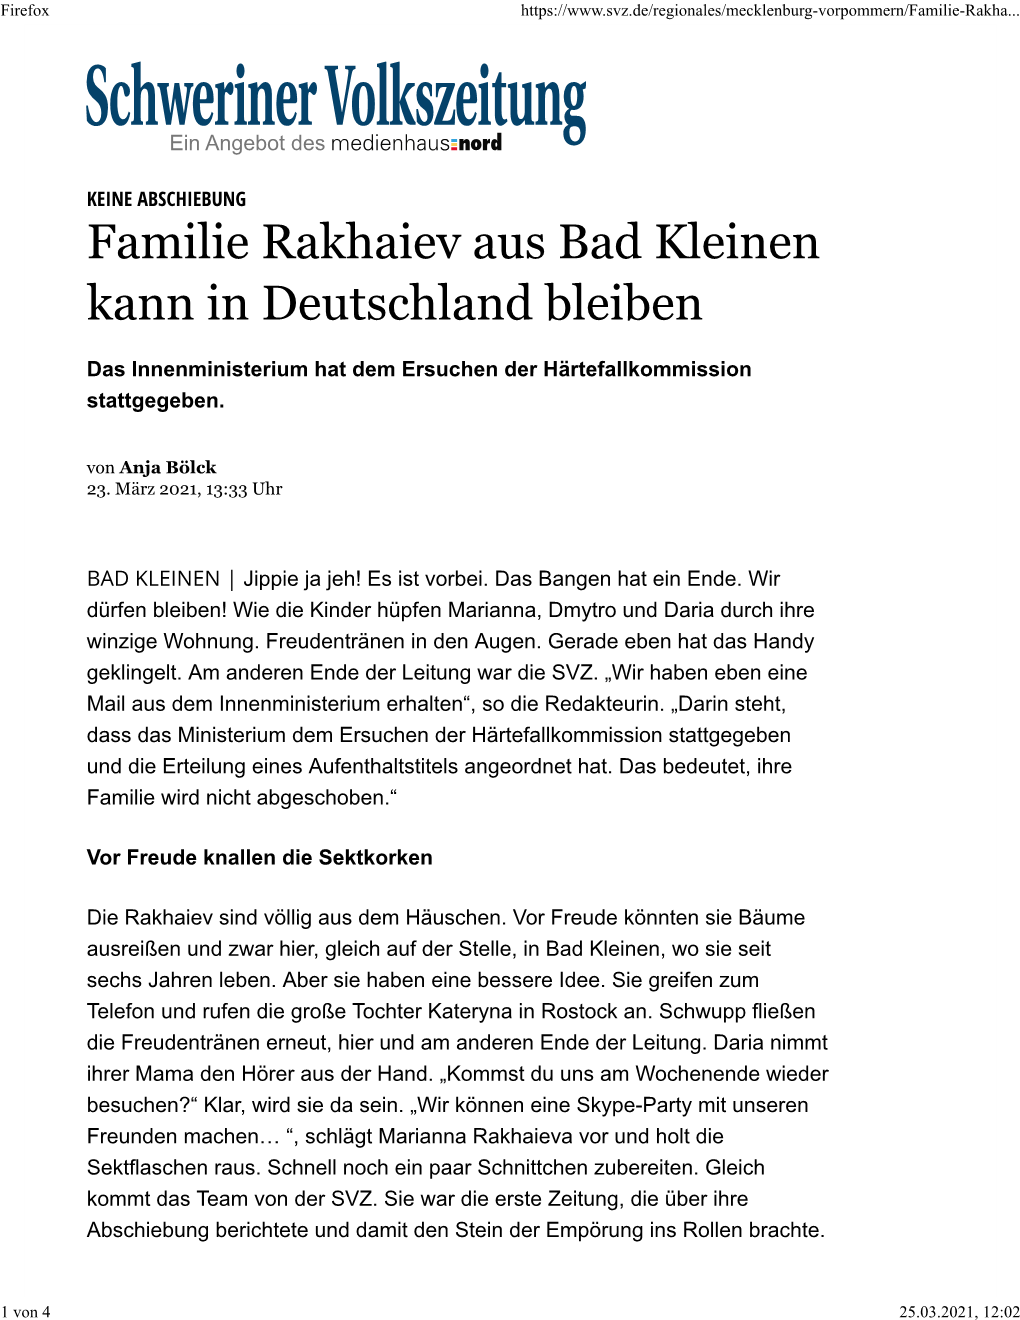 Familie Rakhaiev Aus Bad Kleinen Kann in Deutschland Bleiben